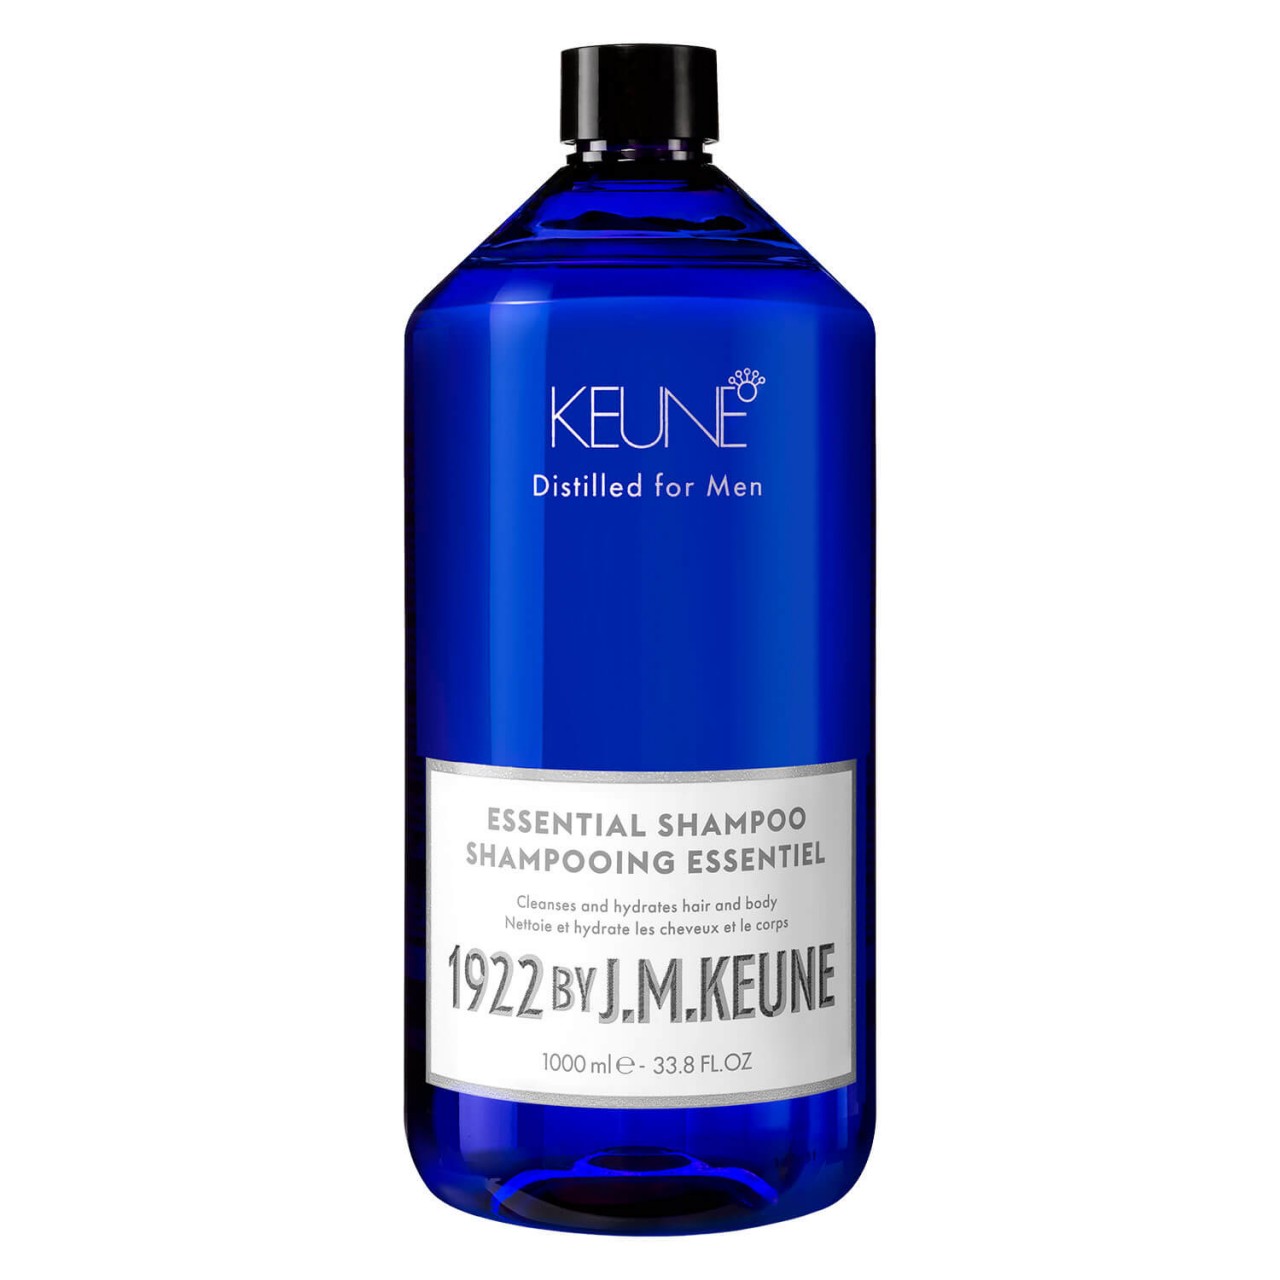 1922 by J.M. Keune - Essential Shampoo